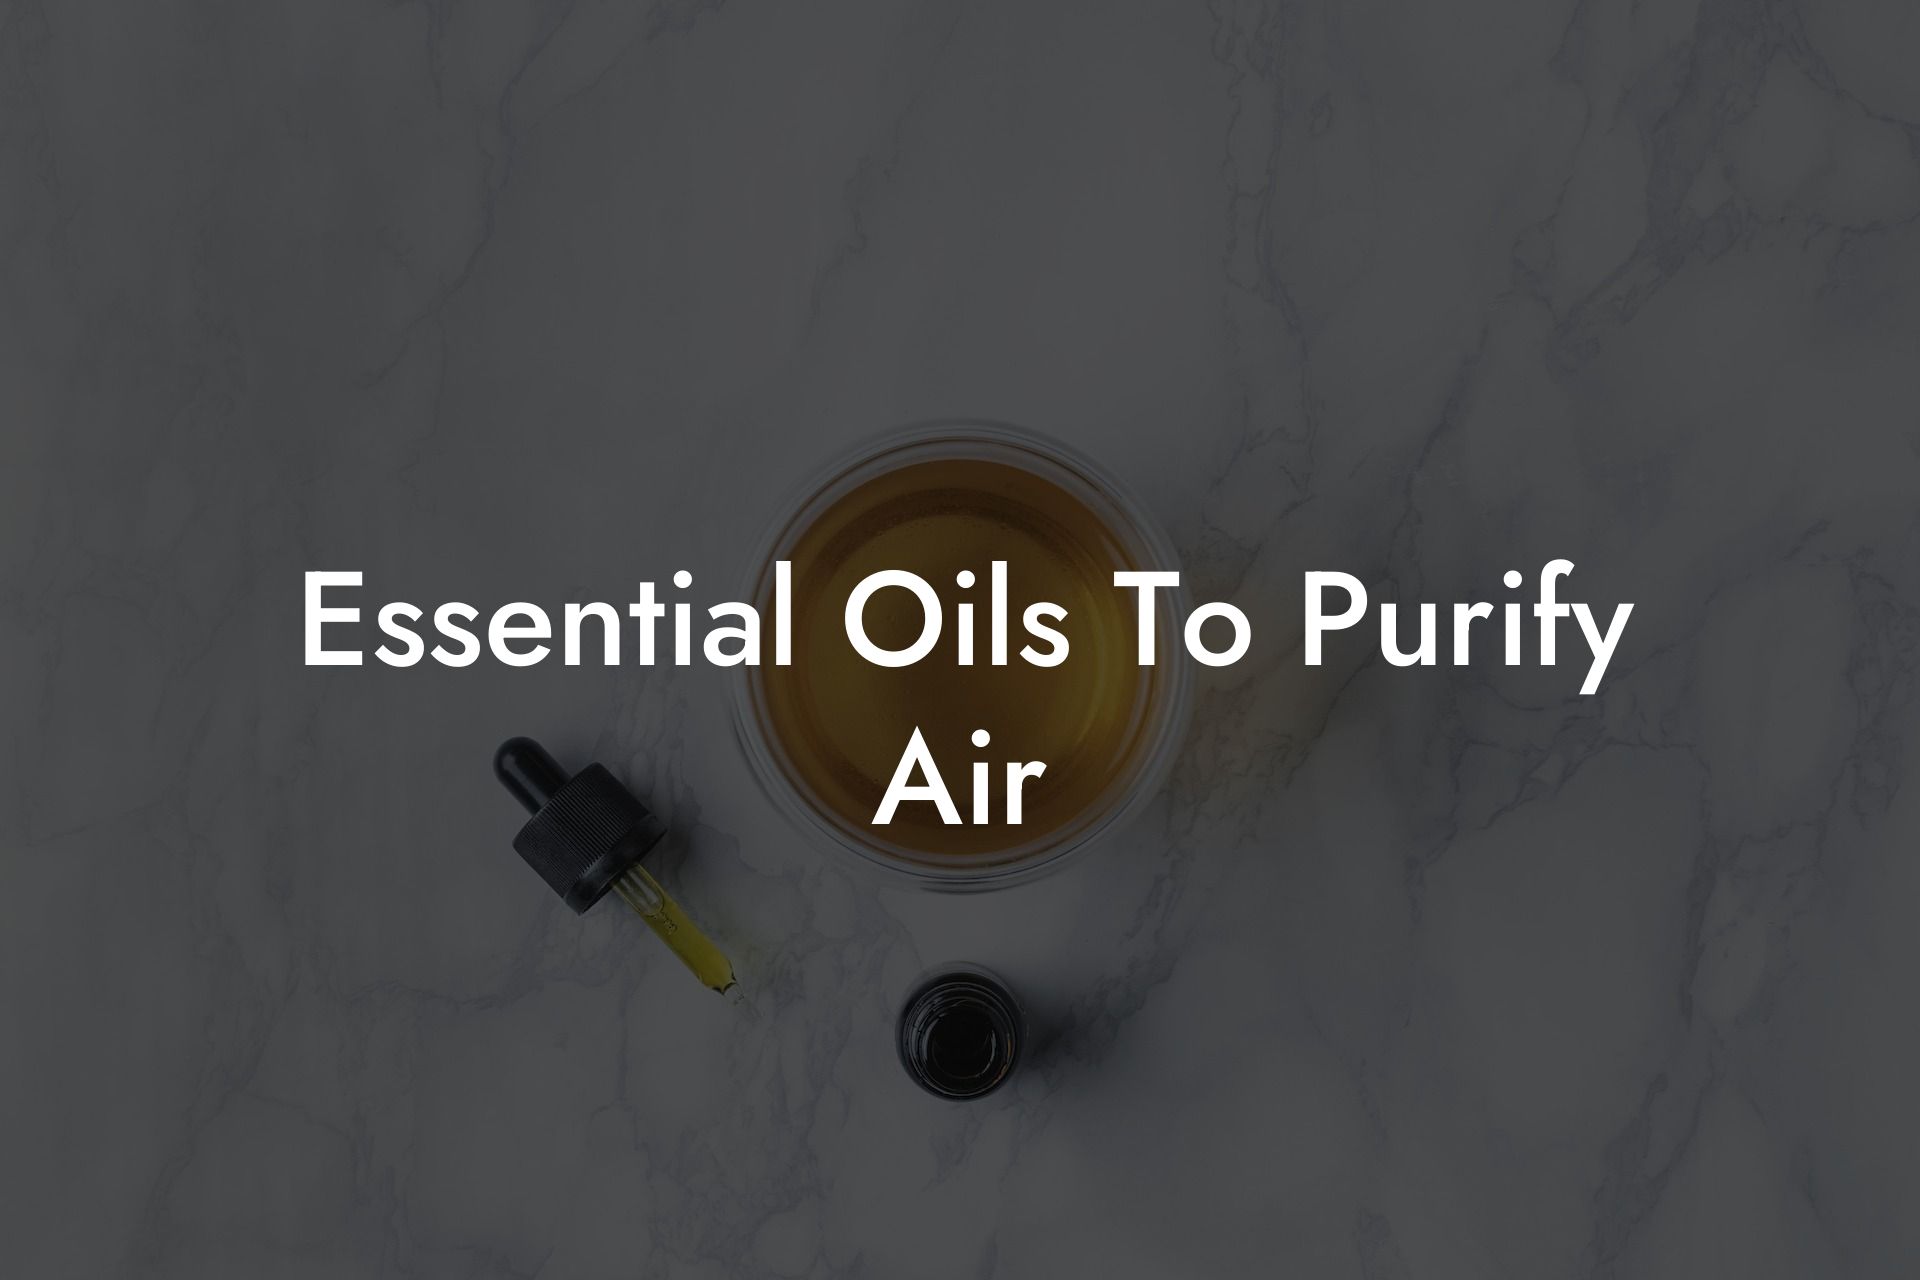 Essential Oils To Purify Air